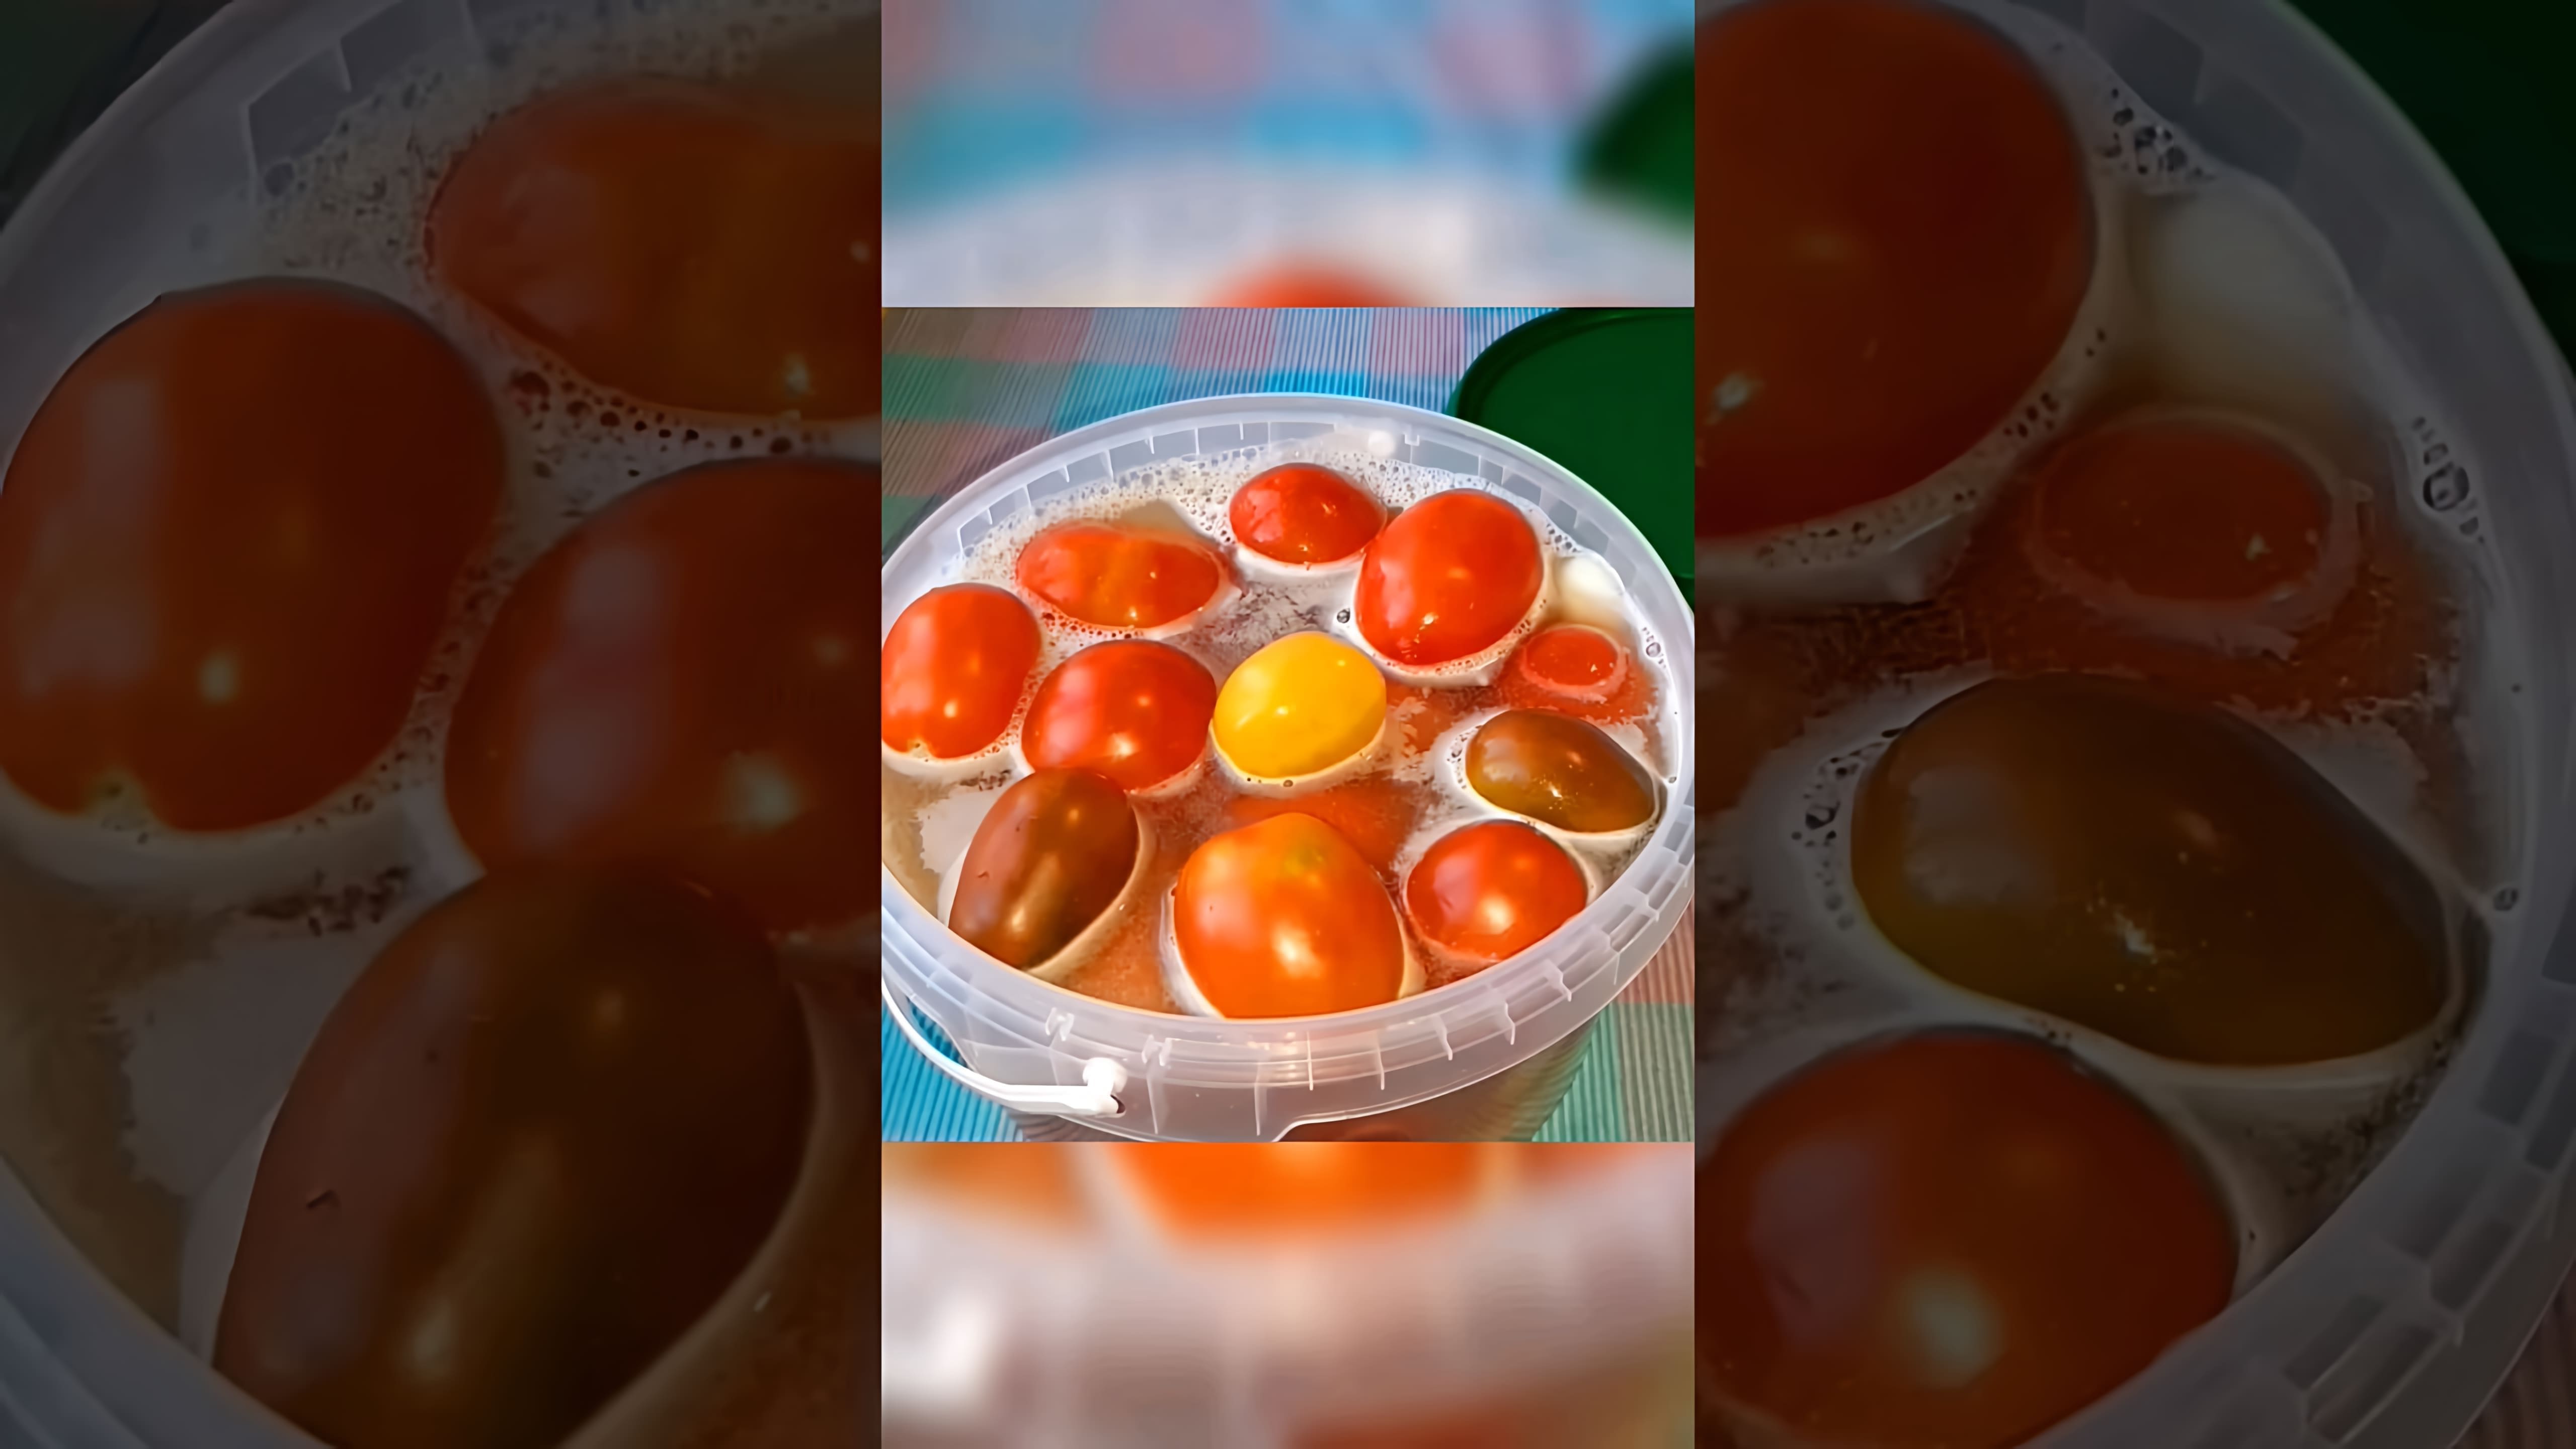 В этом видео демонстрируется процесс приготовления квашеных помидоров с горчицей и луком